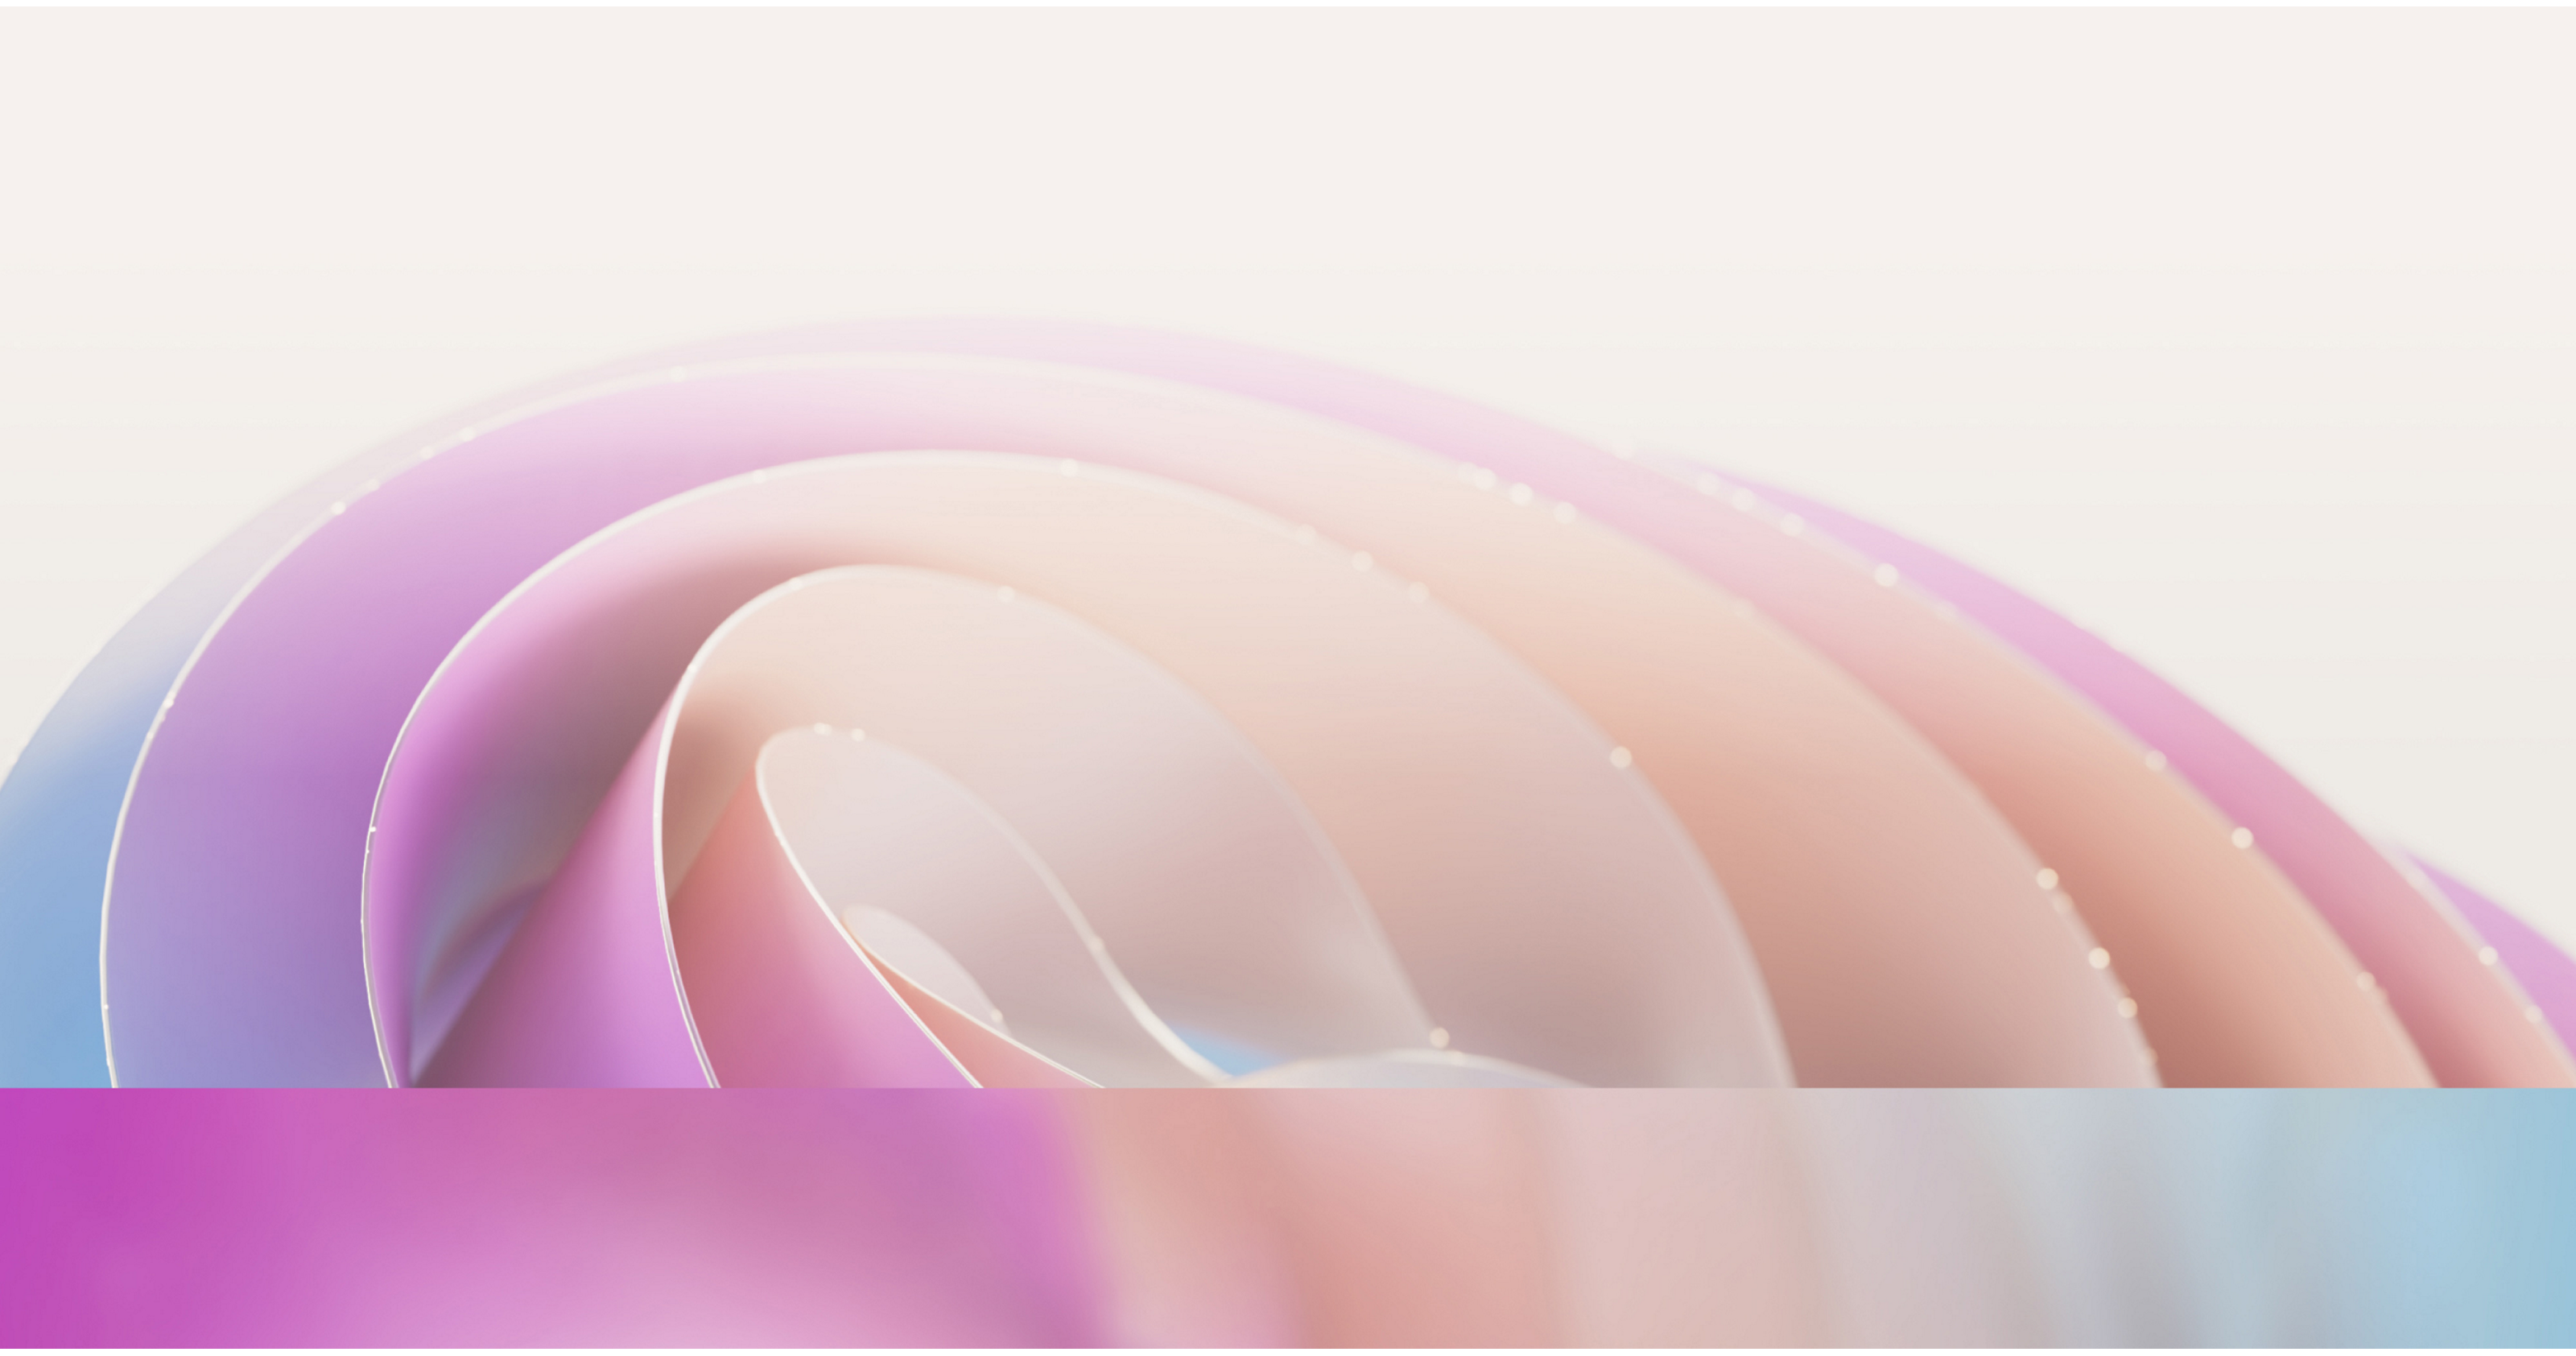 Abstracte afbeelding met soepel, vloeiende curves in zacht roze en paarse tinten met een subtiel, lichtverspreidend effect.